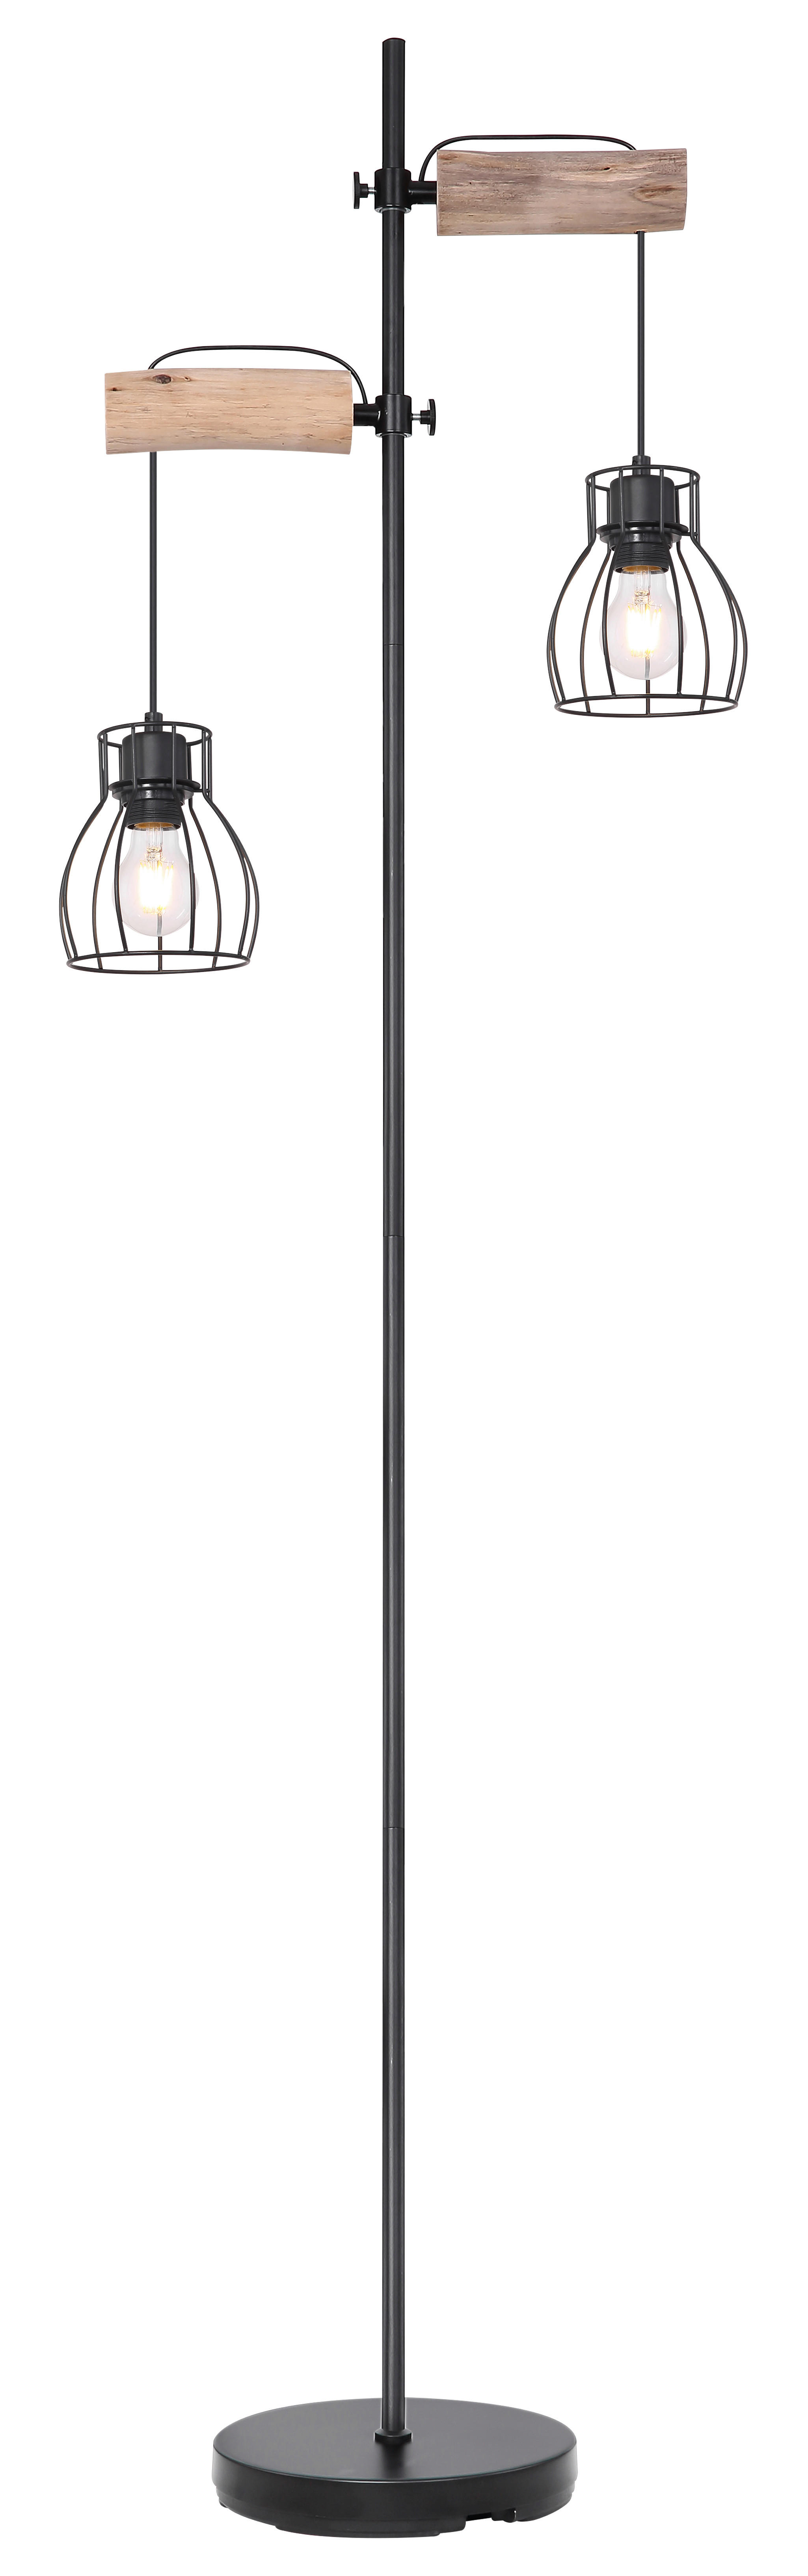 STOJACÍ LAMPA, 47/168 cm - černá